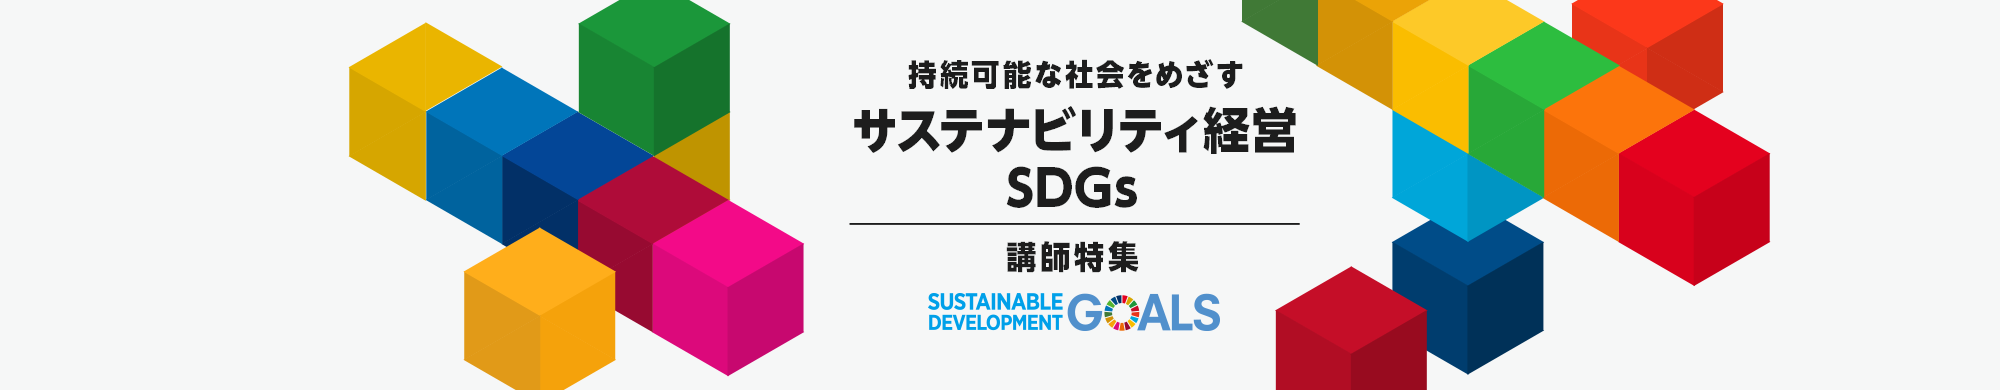 サステナビリティ経営・SDGs講師特集